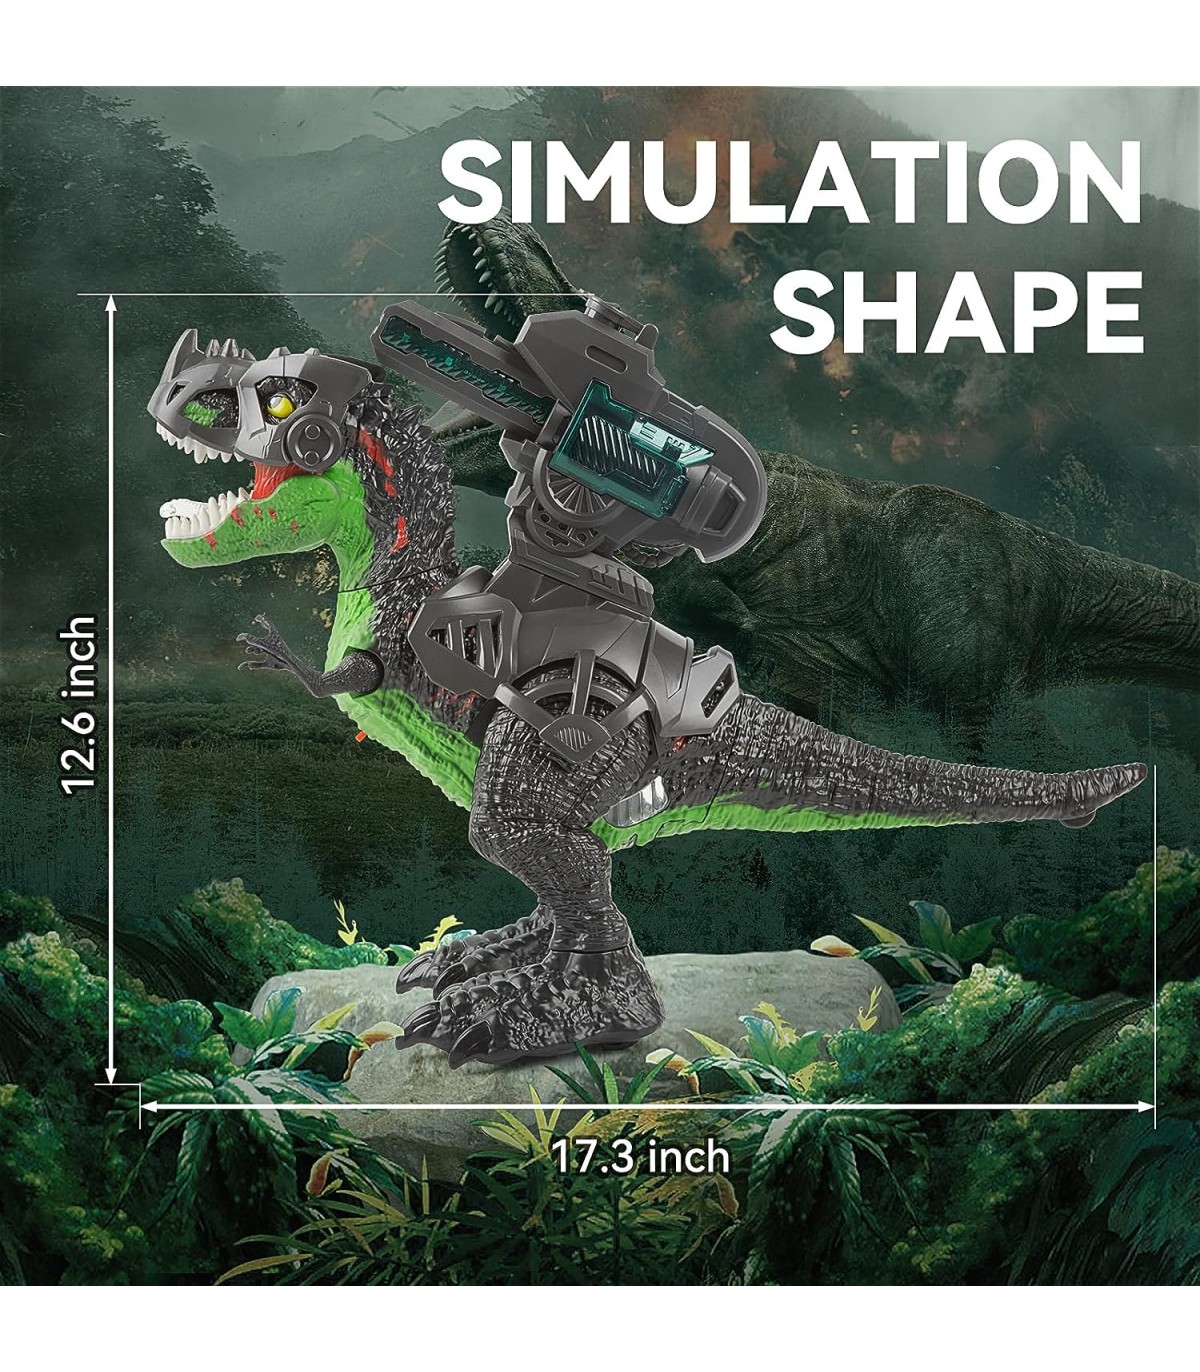 Dinossauro Robô Interativo Programável com Controle Remoto para